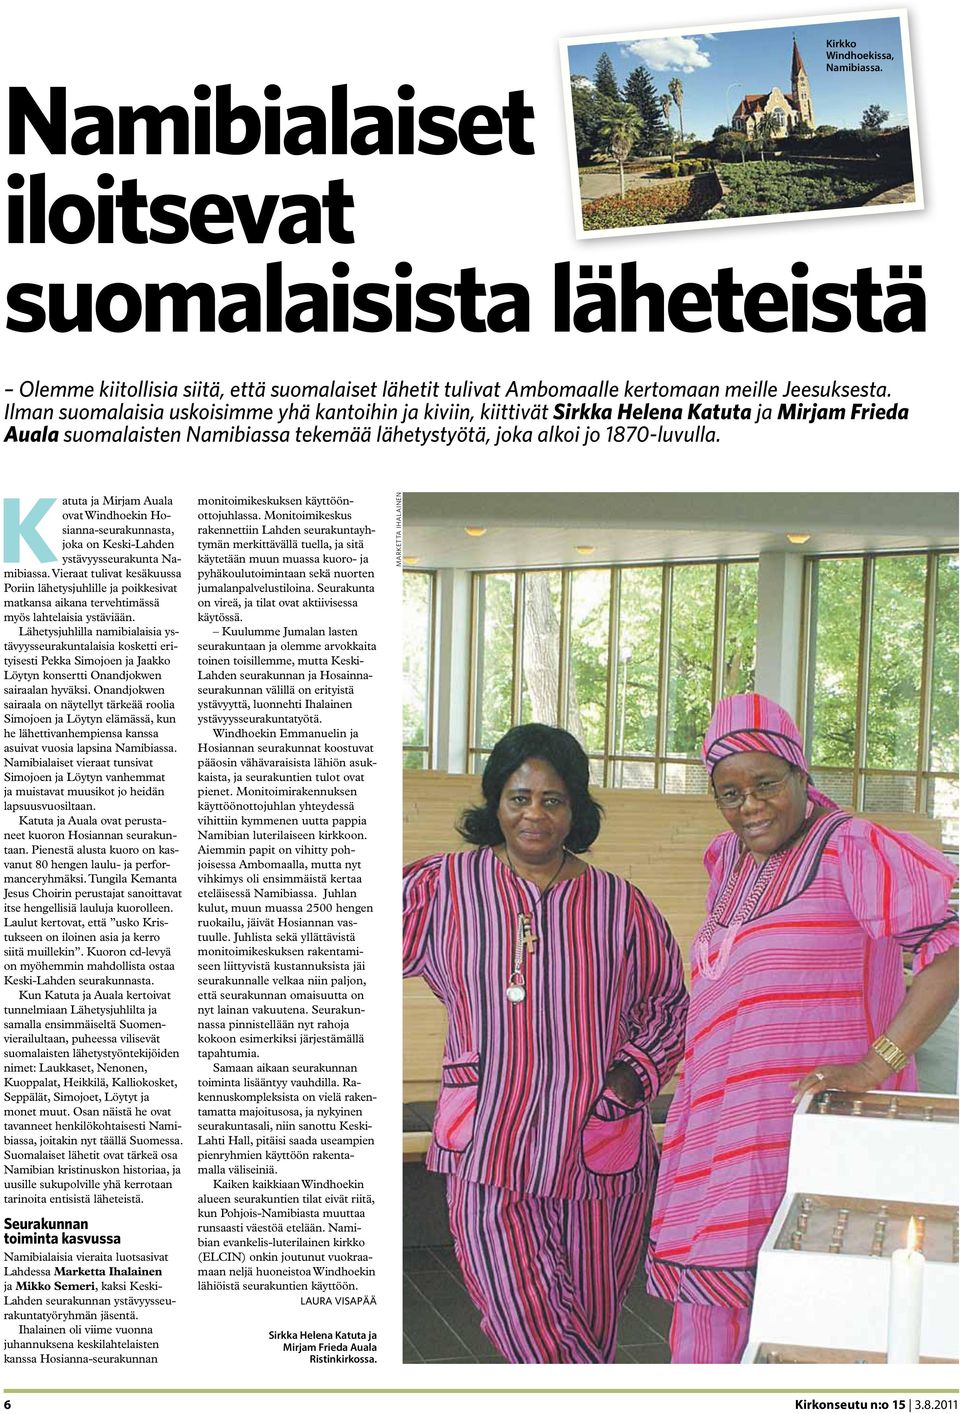 Katuta ja Mirjam Auala ovat Windhoekin Hosianna-seurakunnasta, joka on Keski-Lahden ystävyysseurakunta Namibiassa.